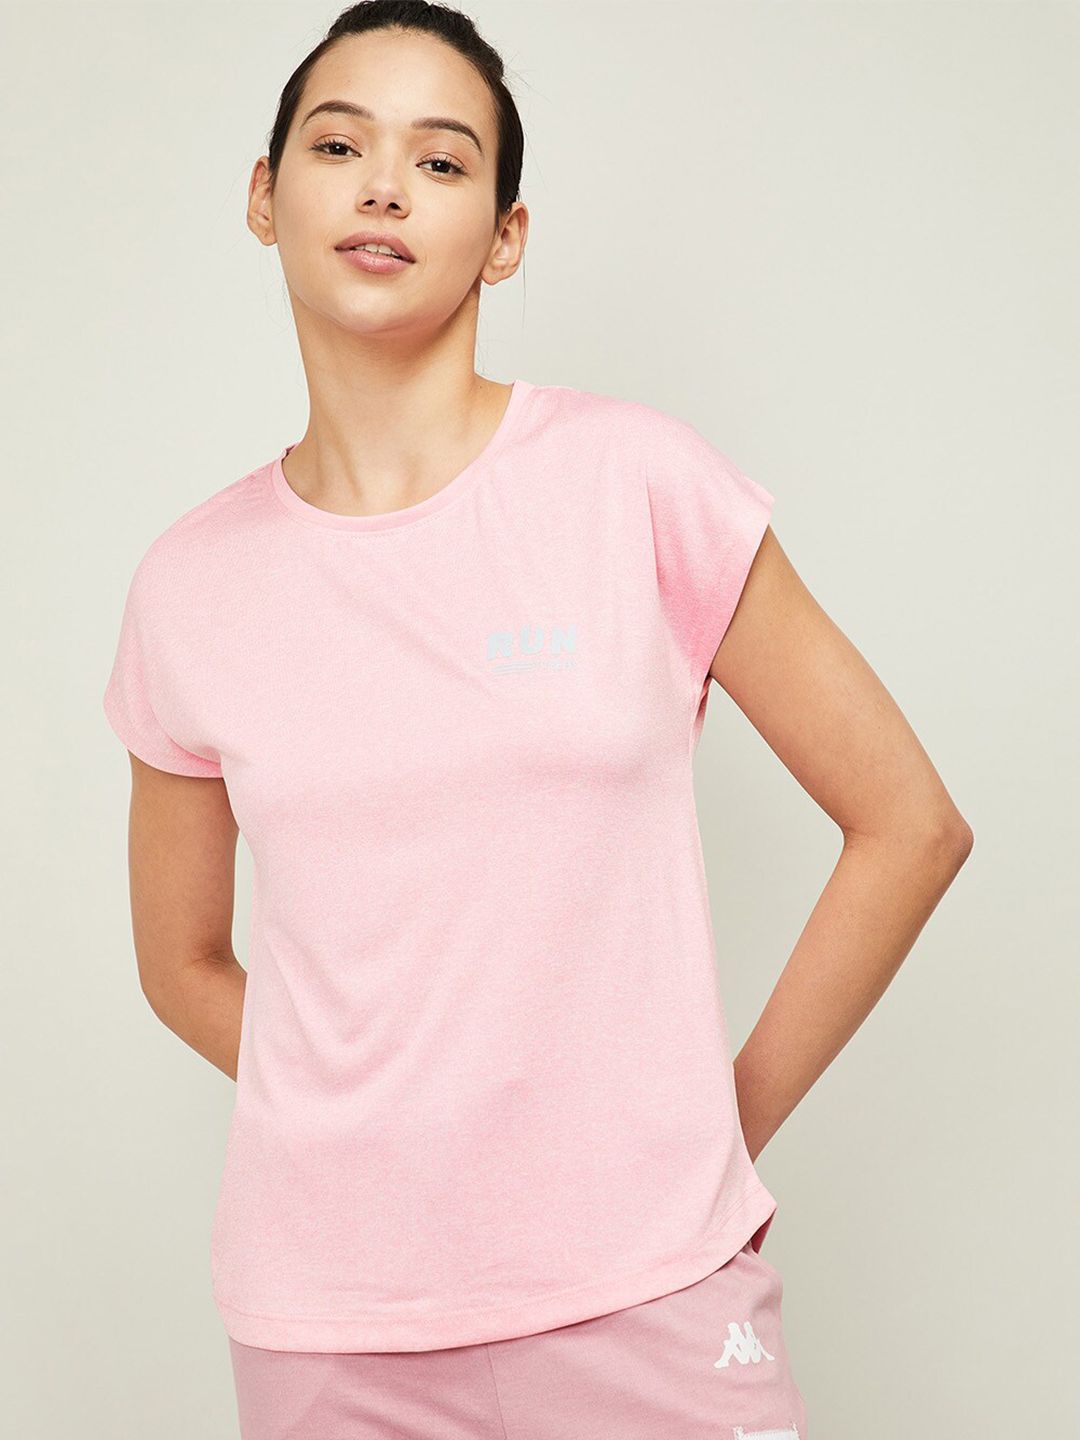 Kappa Women Pink Training or Gym T-shirt Price in India